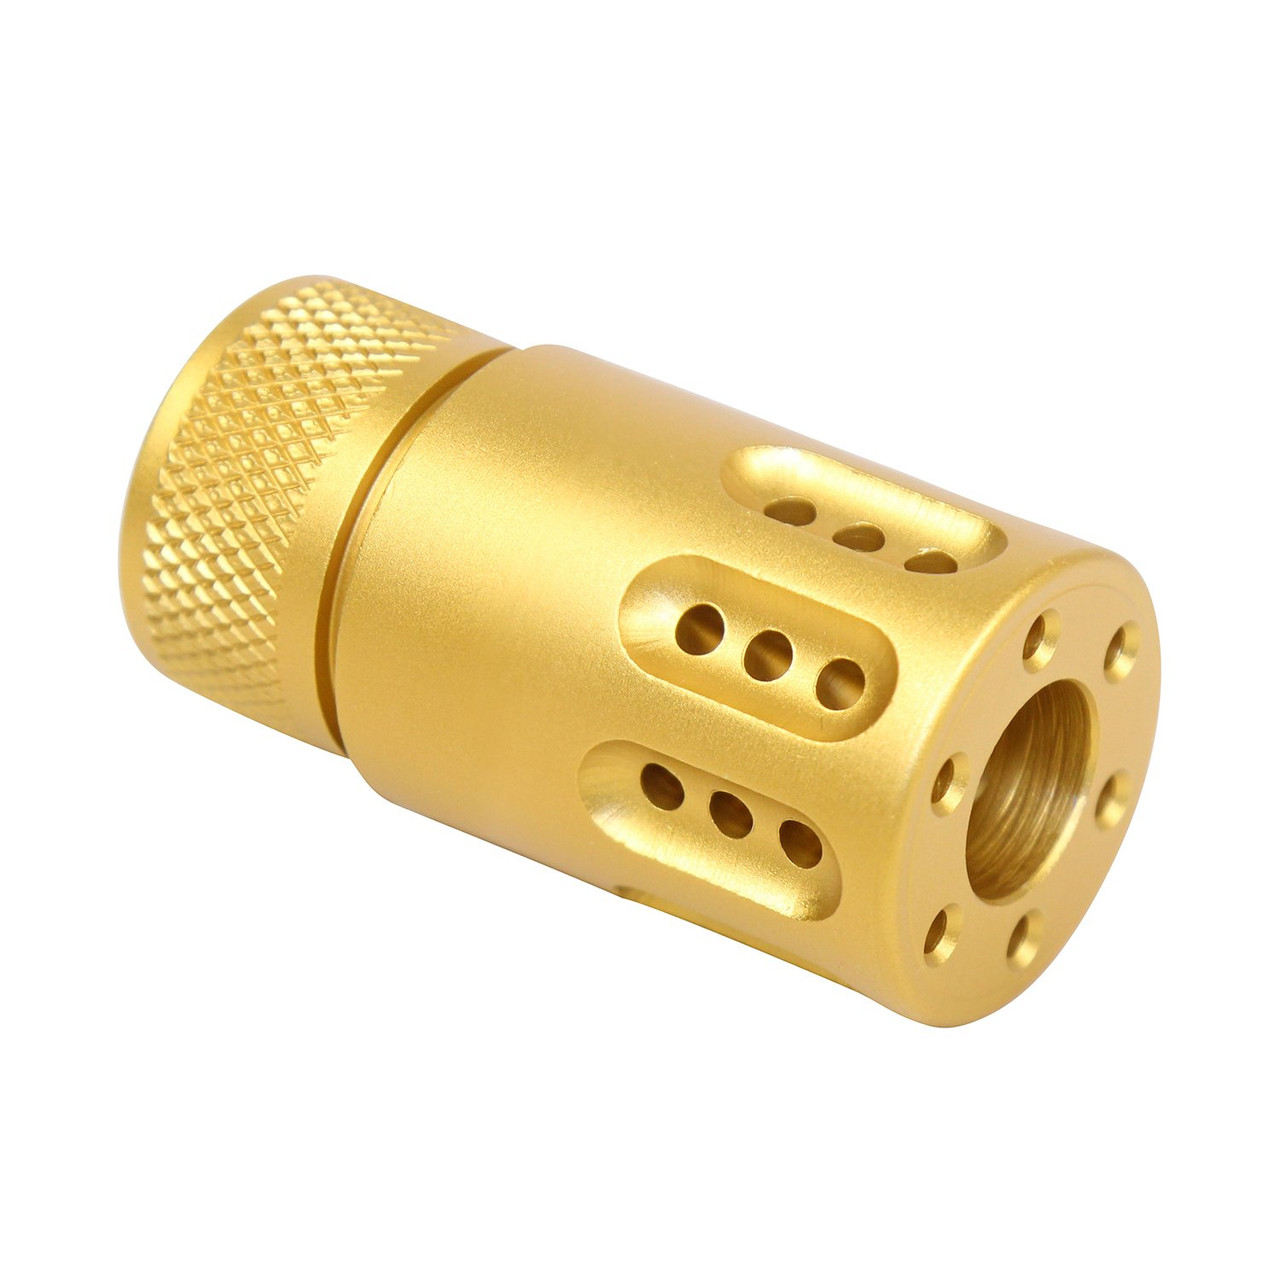 Guntec USA 1326-MB-P-MINI-9-GOLD AR 9MM Mini Slip Over Barrel Shroud With Multi Port Muzzle Brake (Anodized Gold)